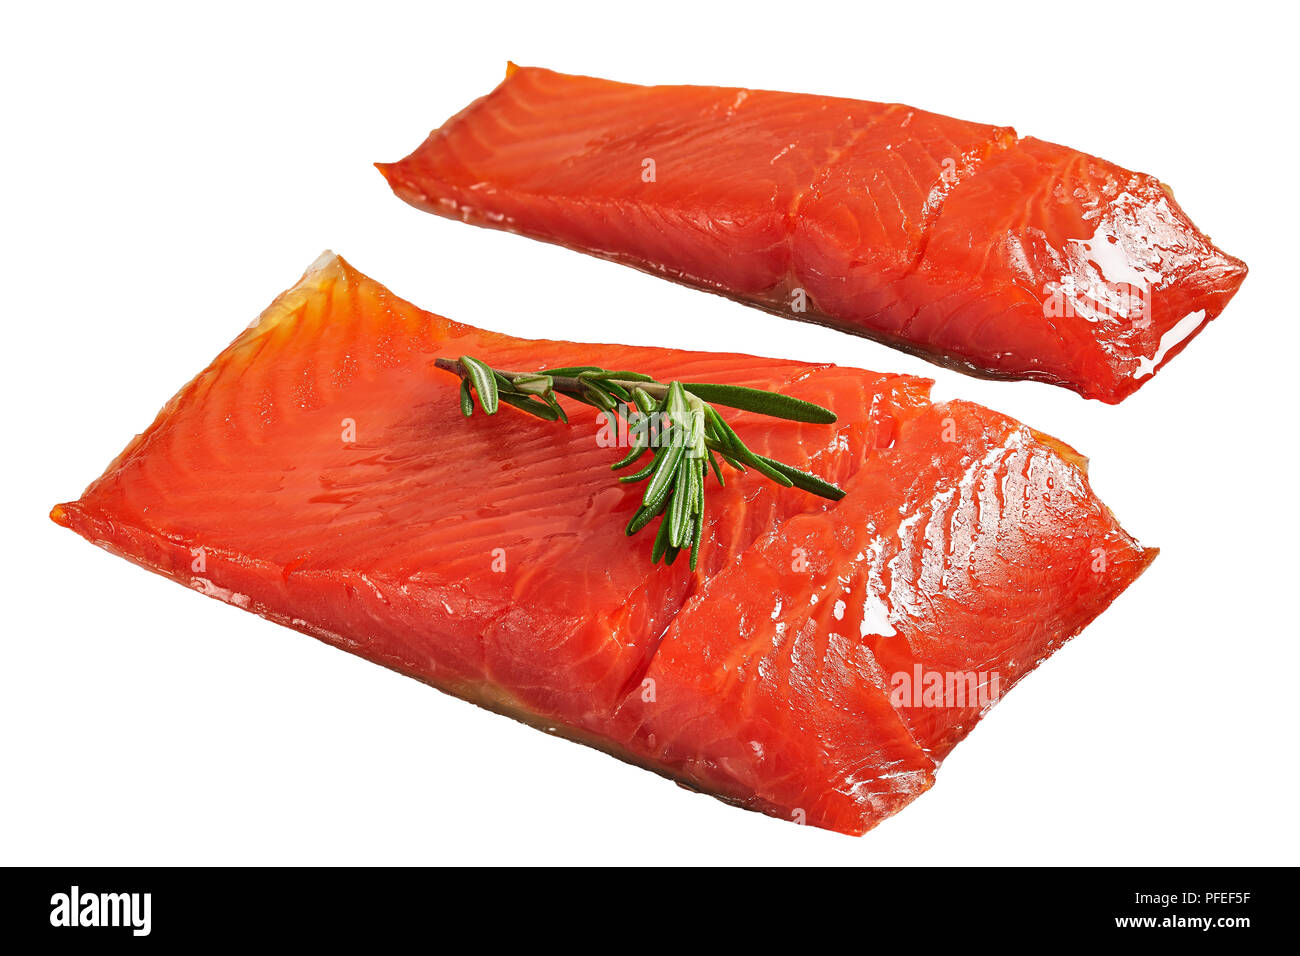 Due pezzi di salmone con rosmarino fresco isolato su sfondo bianco, vista da sopra, close-up Foto Stock